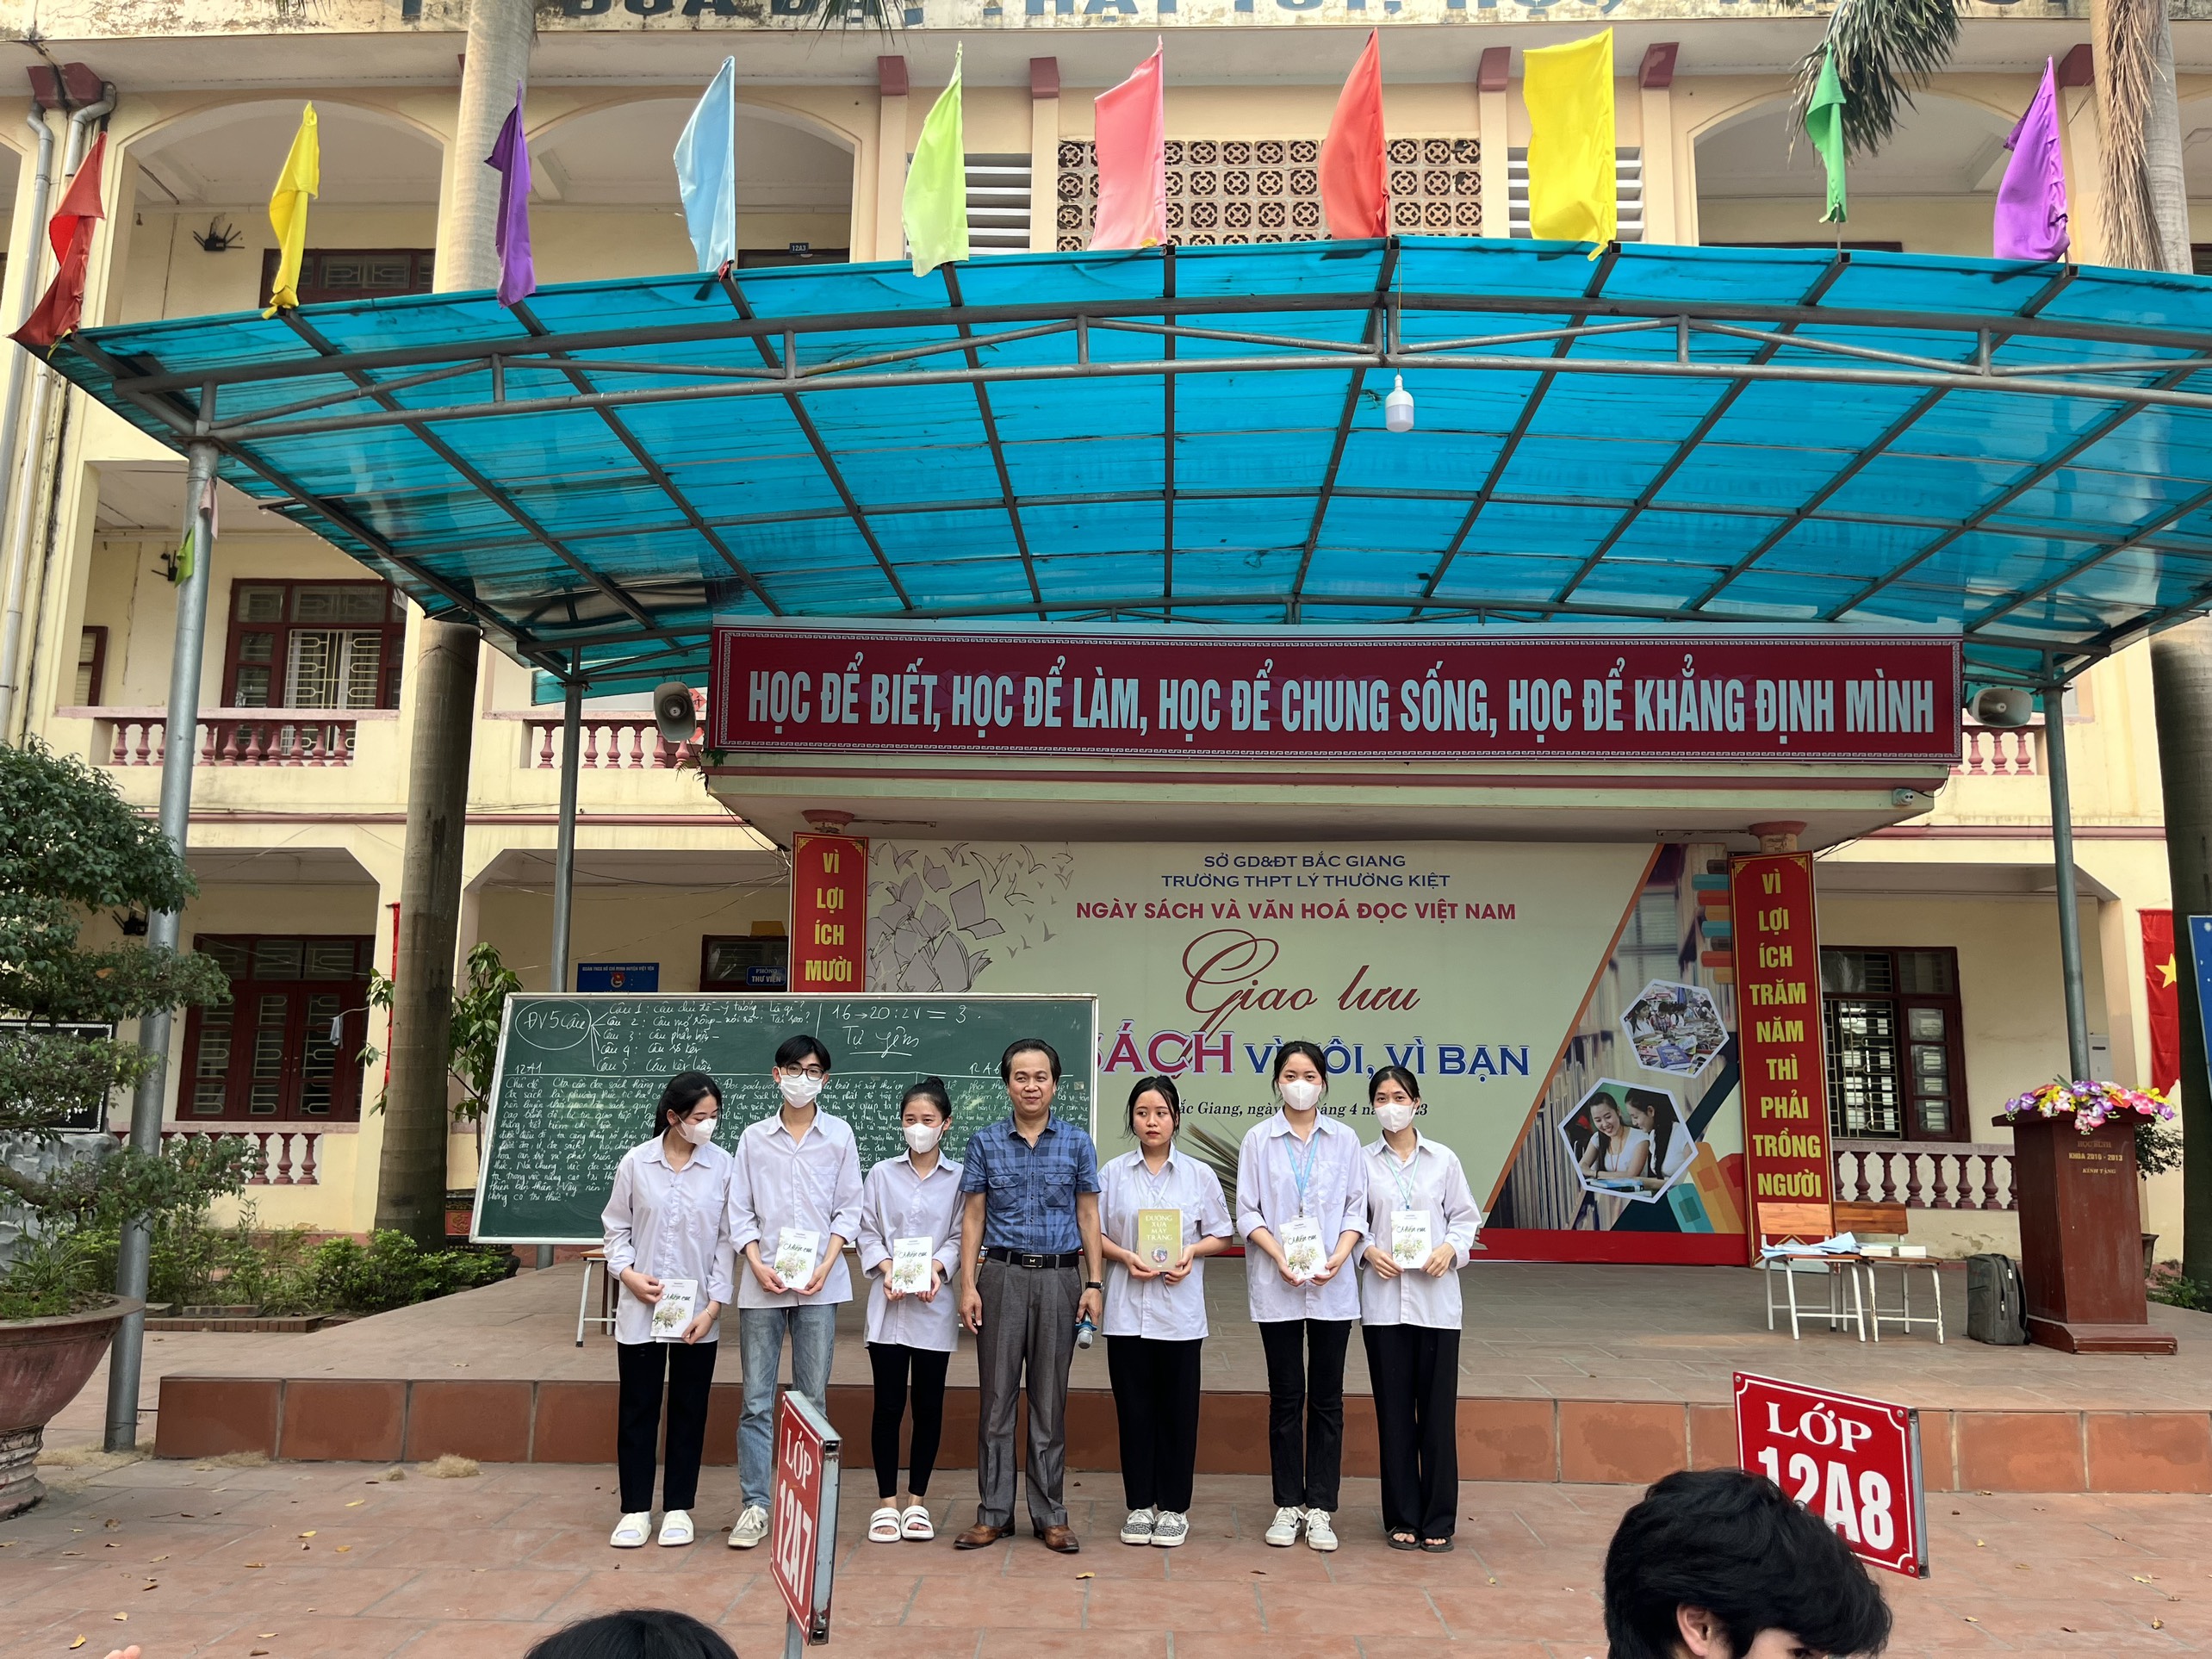 Trường THPT Lý Thường Kiệt tổ chức hoạt động ngoại khoá “Giao lưu Sách vì tôi, vì bạn” nhân Ngày...